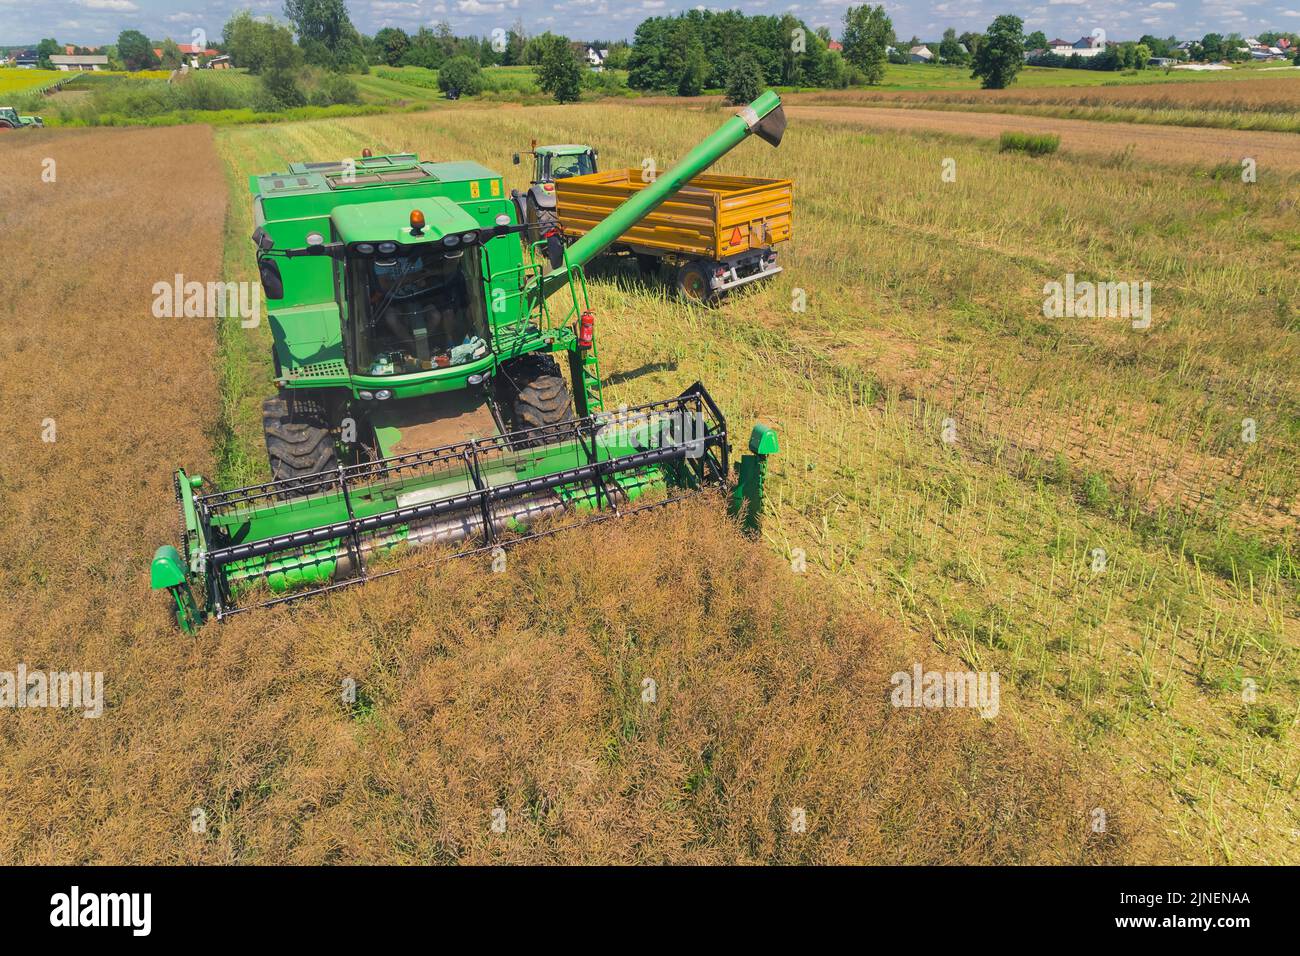 Vue aérienne d'une moissonneuse-batteuse agricole verte avec rabatteur rotatif pour la récolte dans un grand champ de céréales et le déchargement du grain dans un camion. Vue d'été depuis un drone volant. Photo de haute qualité Banque D'Images